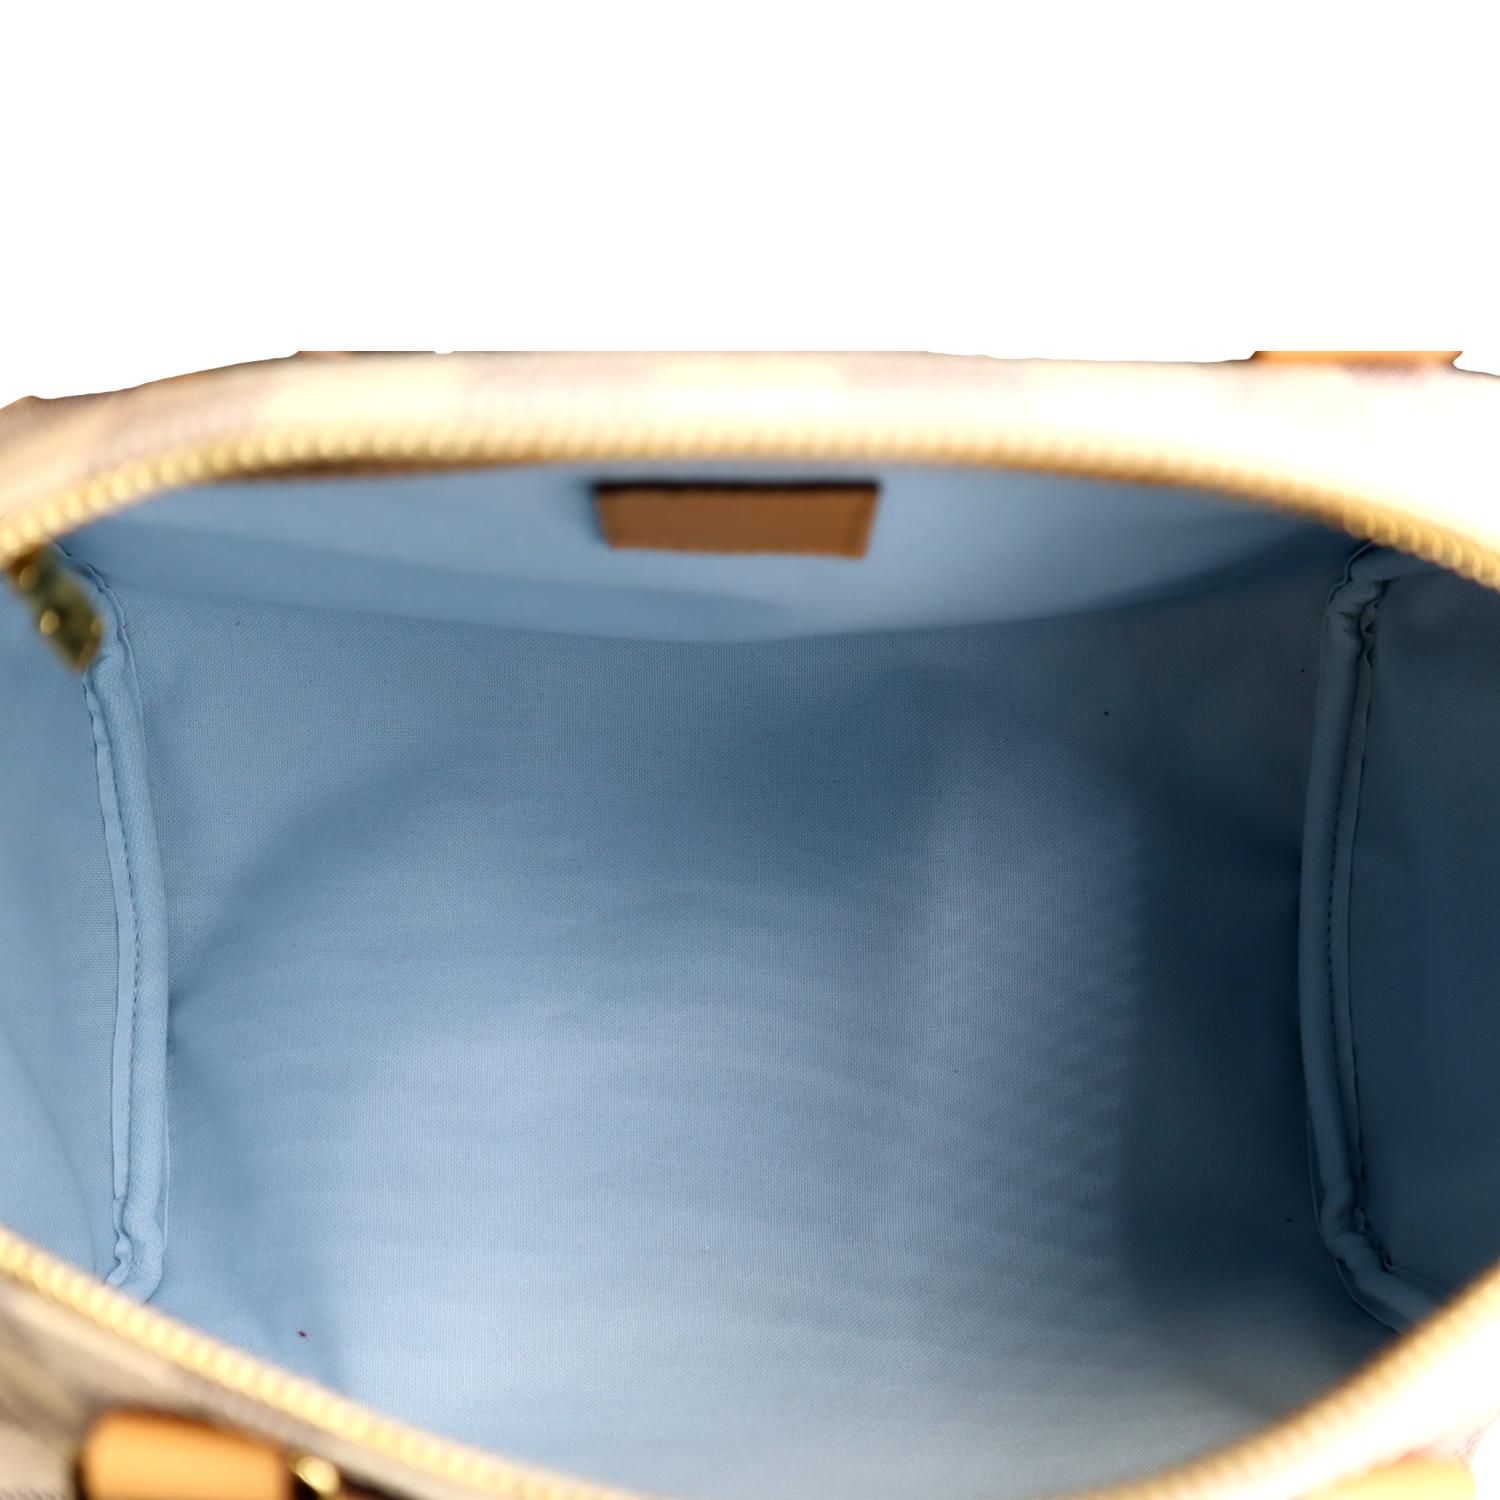 Louis Vuitton Speedy Damier Azur 30 White/Blue in Canvas/Vachetta with  Brass - US